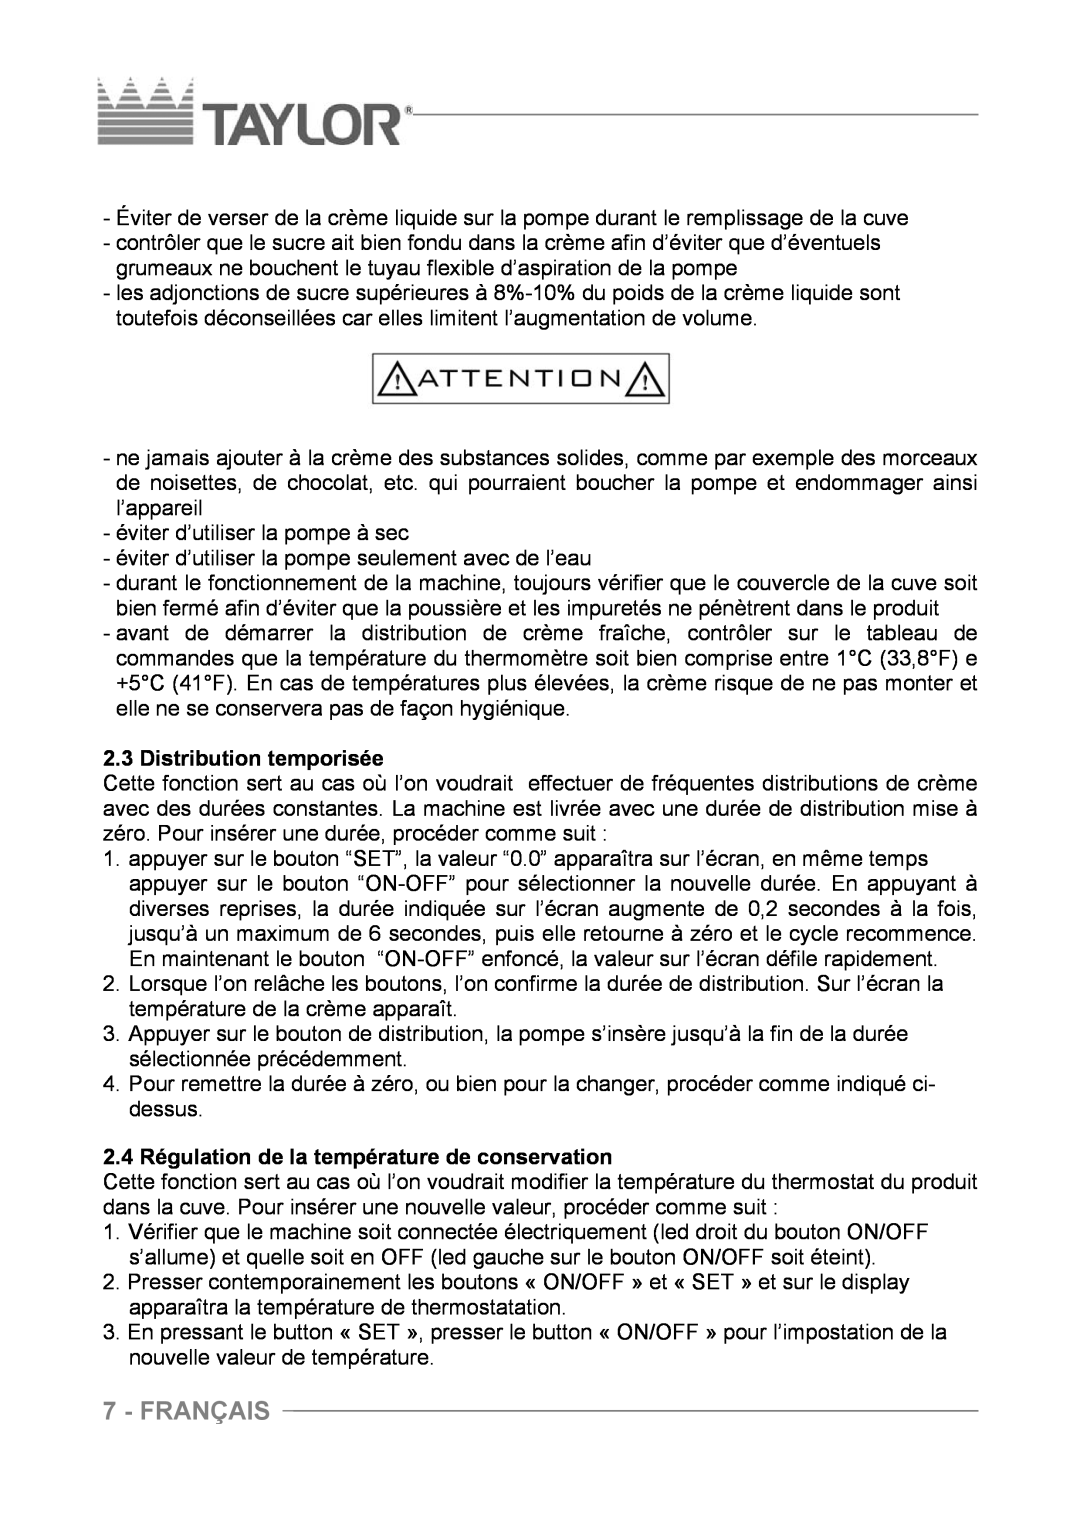 Taylor C004 - C007 manuel dutilisation Français, Distribution temporisée, 2.4 Régulation de la température de conservation 